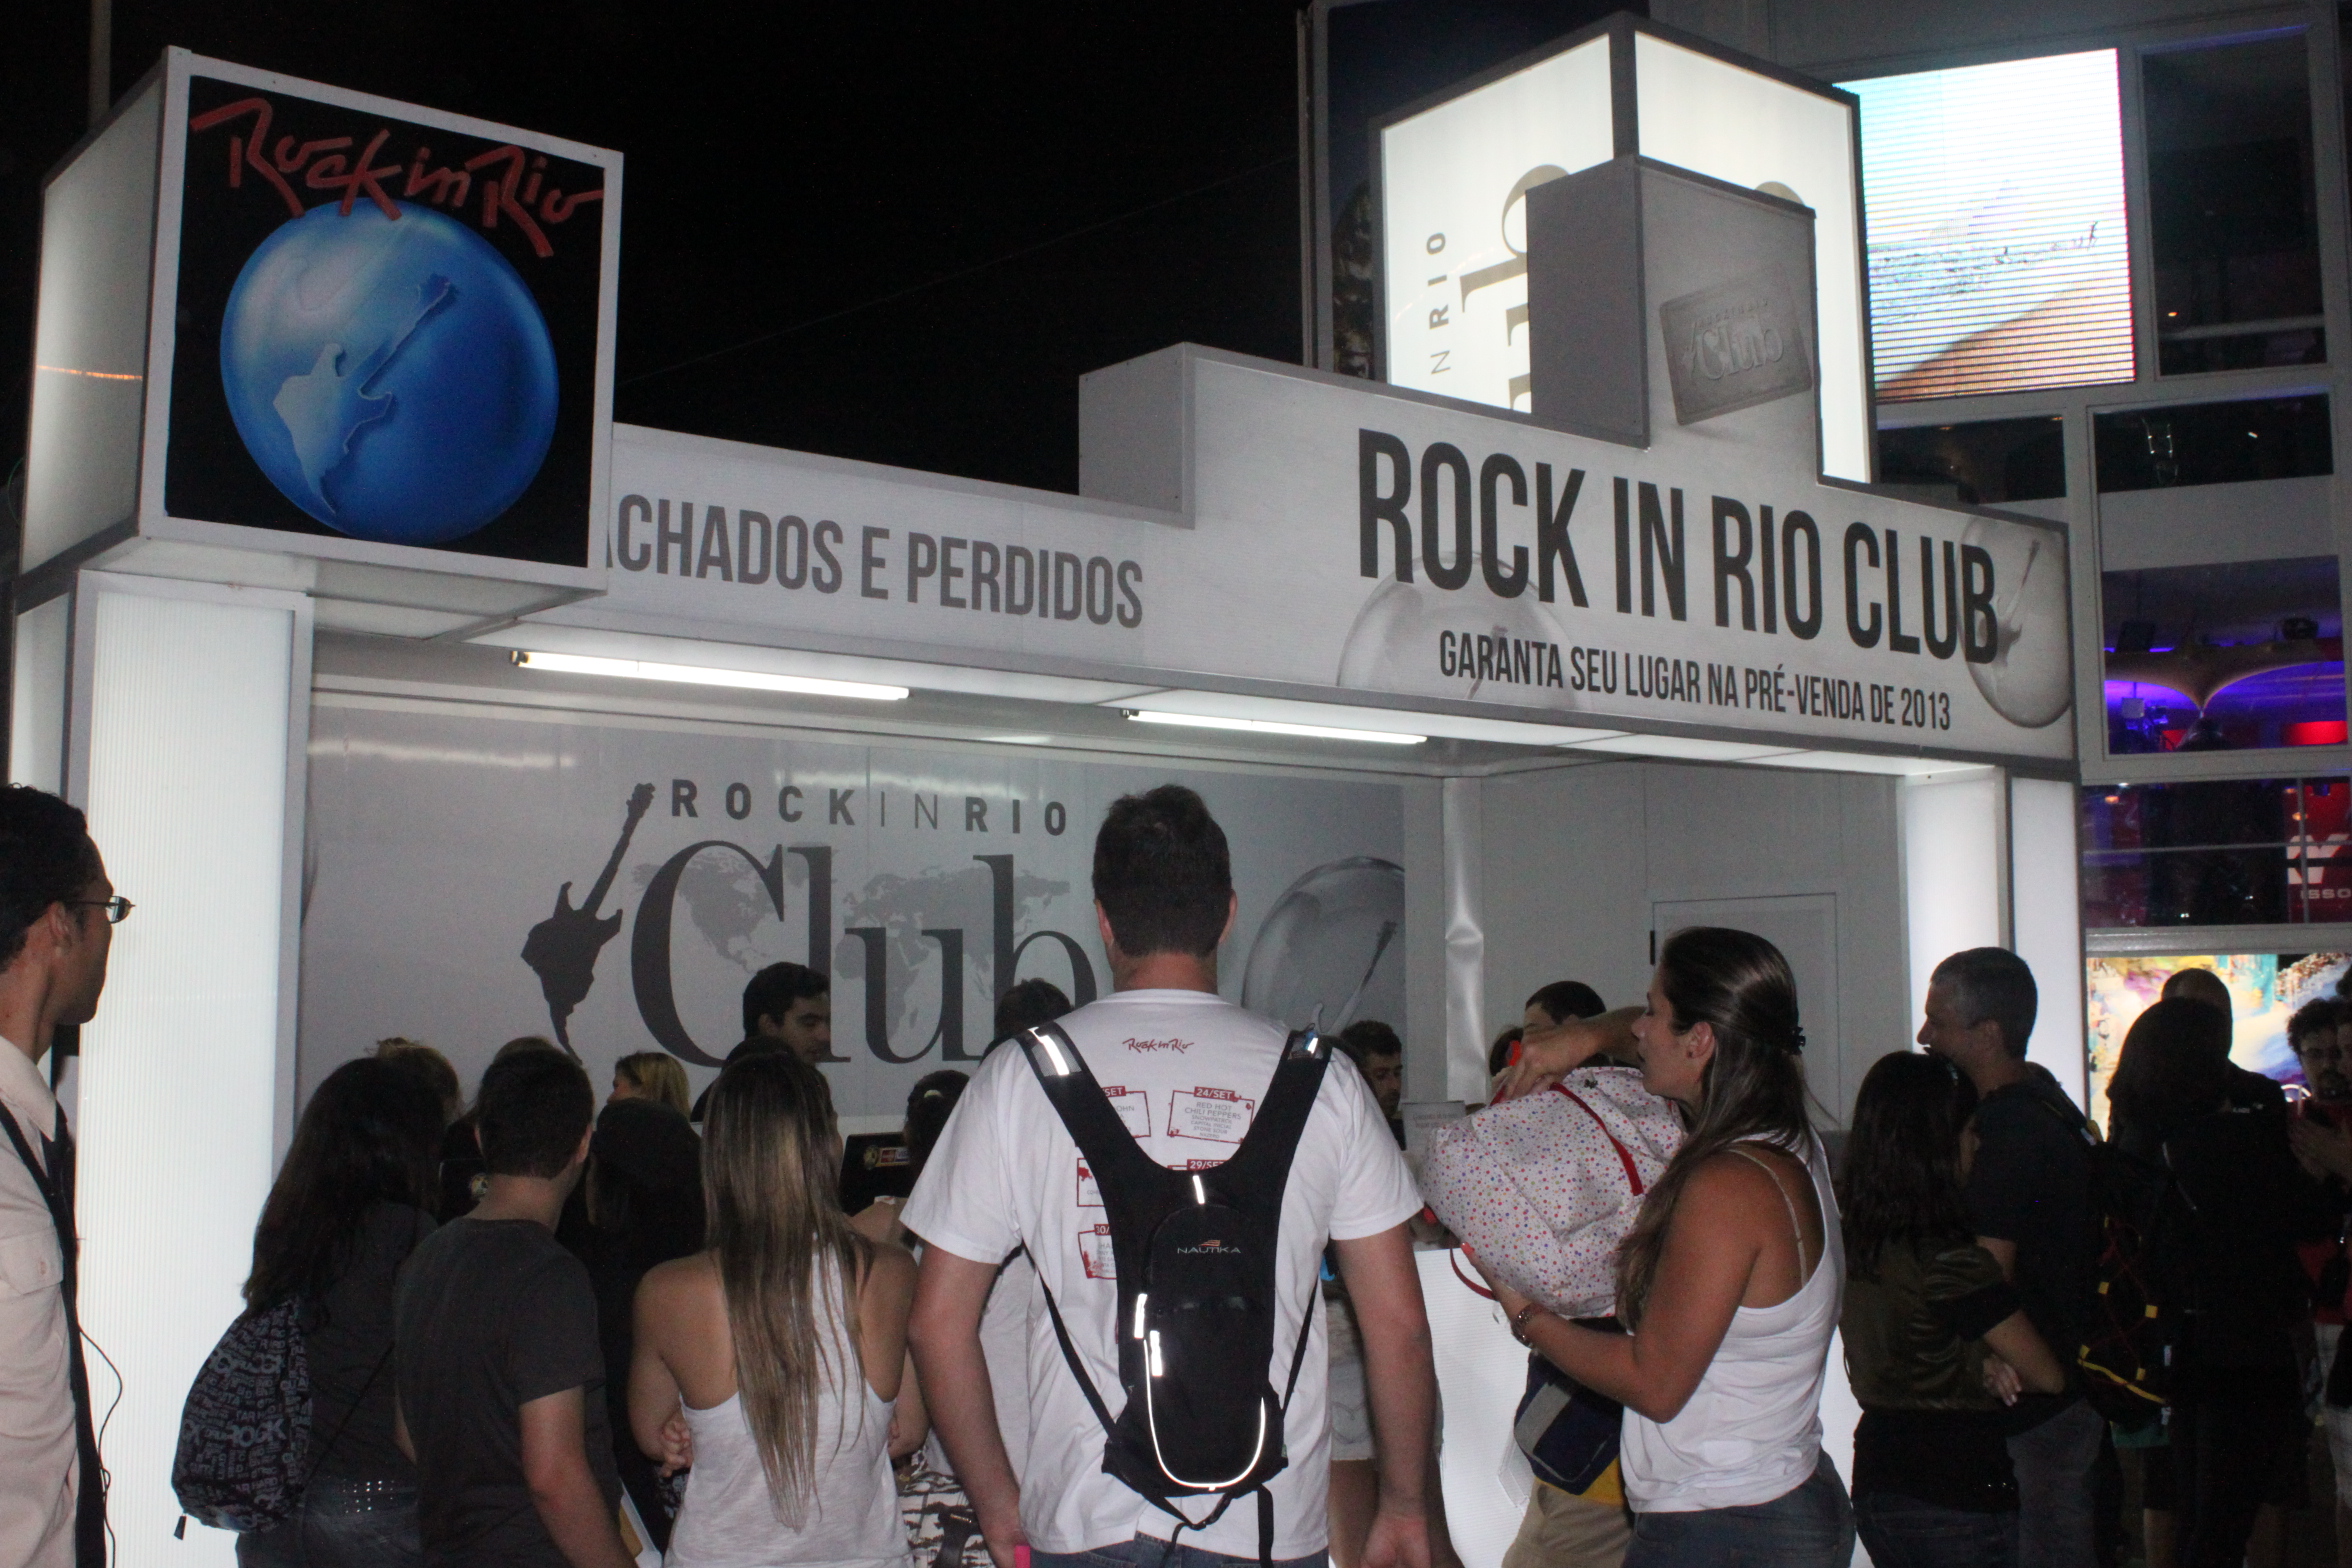 Shows: Rock in Rio Club: desconto para o evento em 2013